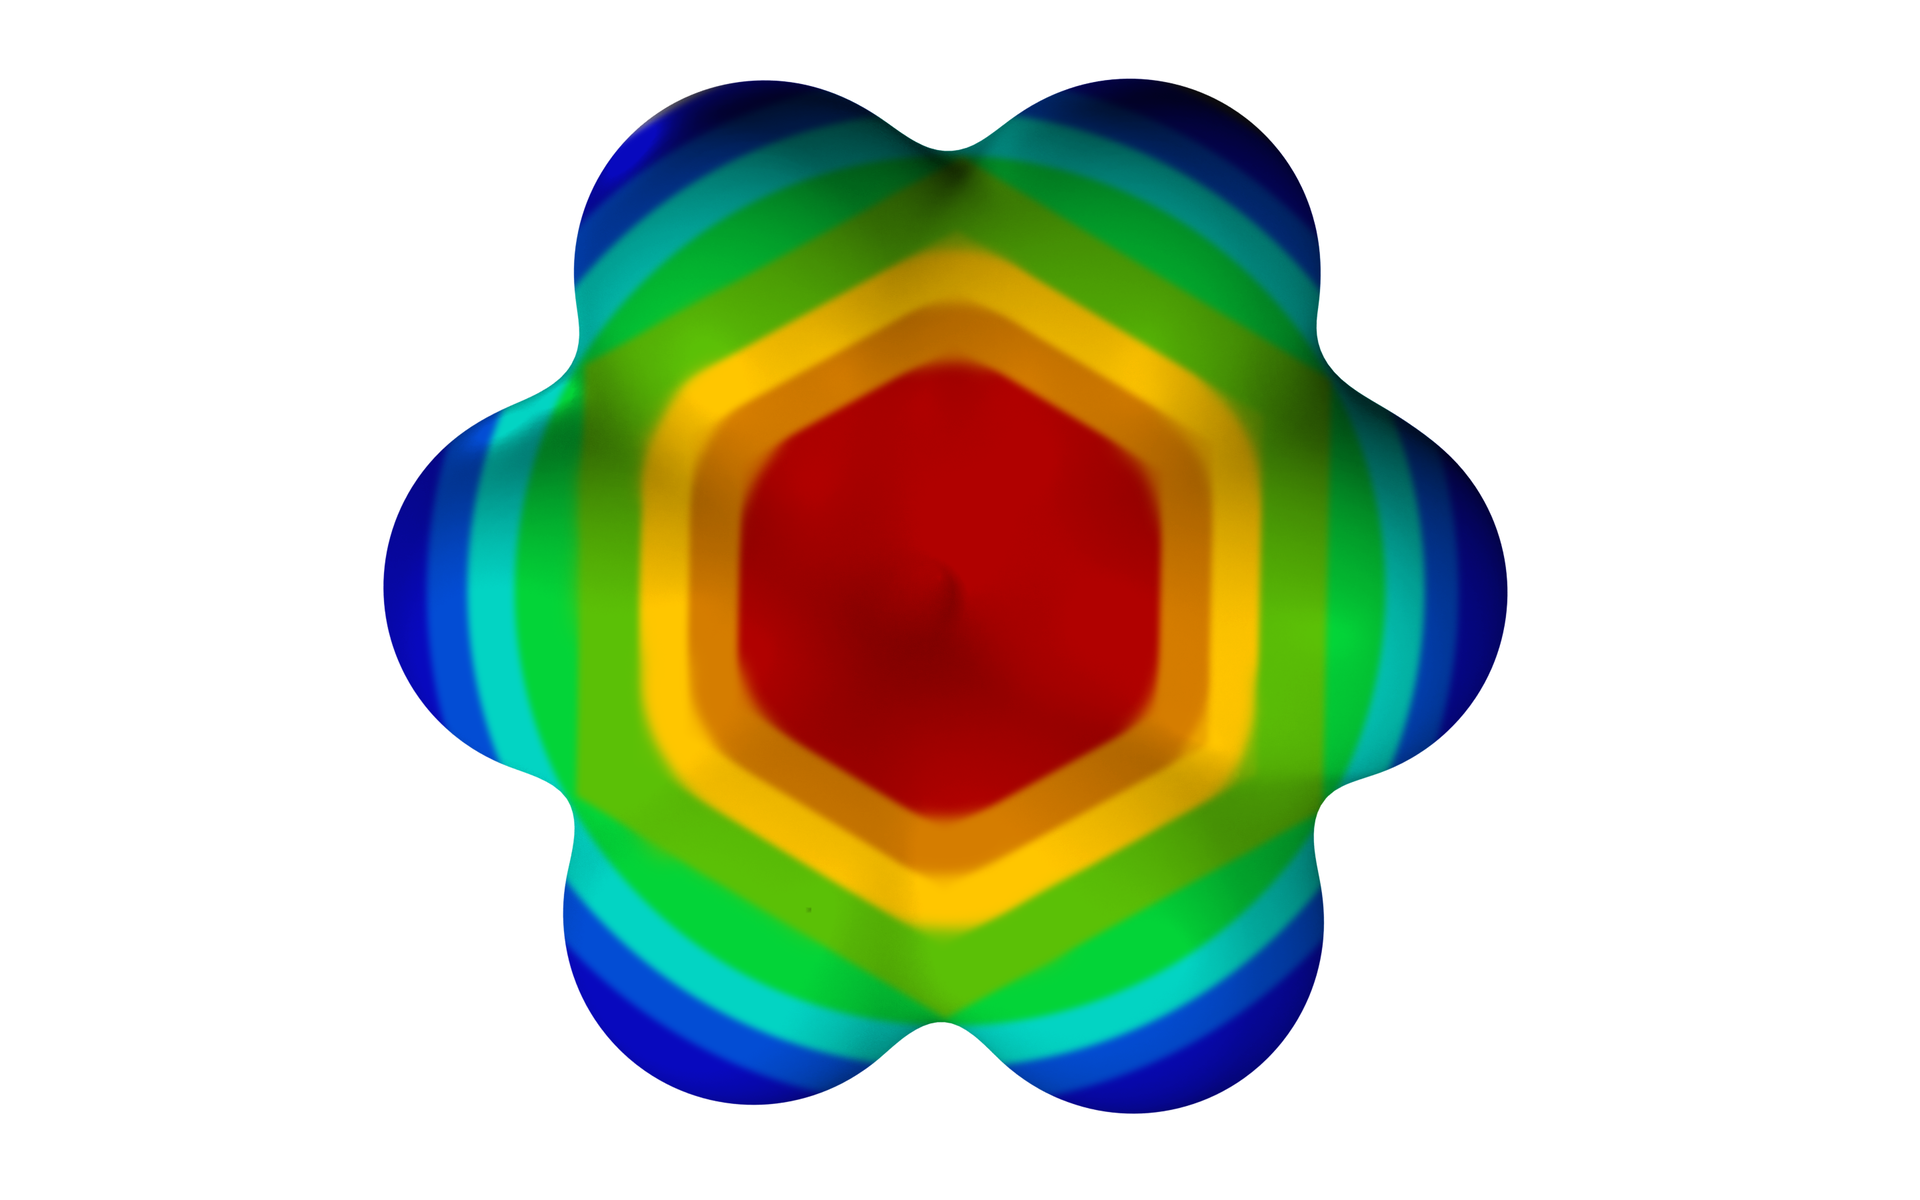  Ilustracja przedstawia wizualizację gęstości elektronowej dla benzenu. Benzen to sześcioczłonowy pierścień aromatyczny. Gęstość elektronową przedstawiono w postaci trójwymiarowej przestrzeni obejmującej wszystkie atomy benzenu, jest ona symetryczna, posiada środek, oś, jak i płaszczyznę symetrii. W centrum cząsteczki gęstość elektronowa jest większa i zaznaczona na czerwono, zaś poza pierścieniem jest ona mniejsza i zaznaczona na niebiesko. Od środka pierścienia ku zewnętrznej części barwa zmienia się poprzez czerwoną, żółtą, zieloną, aż do niebieskiej i ciemnoniebieskiej.